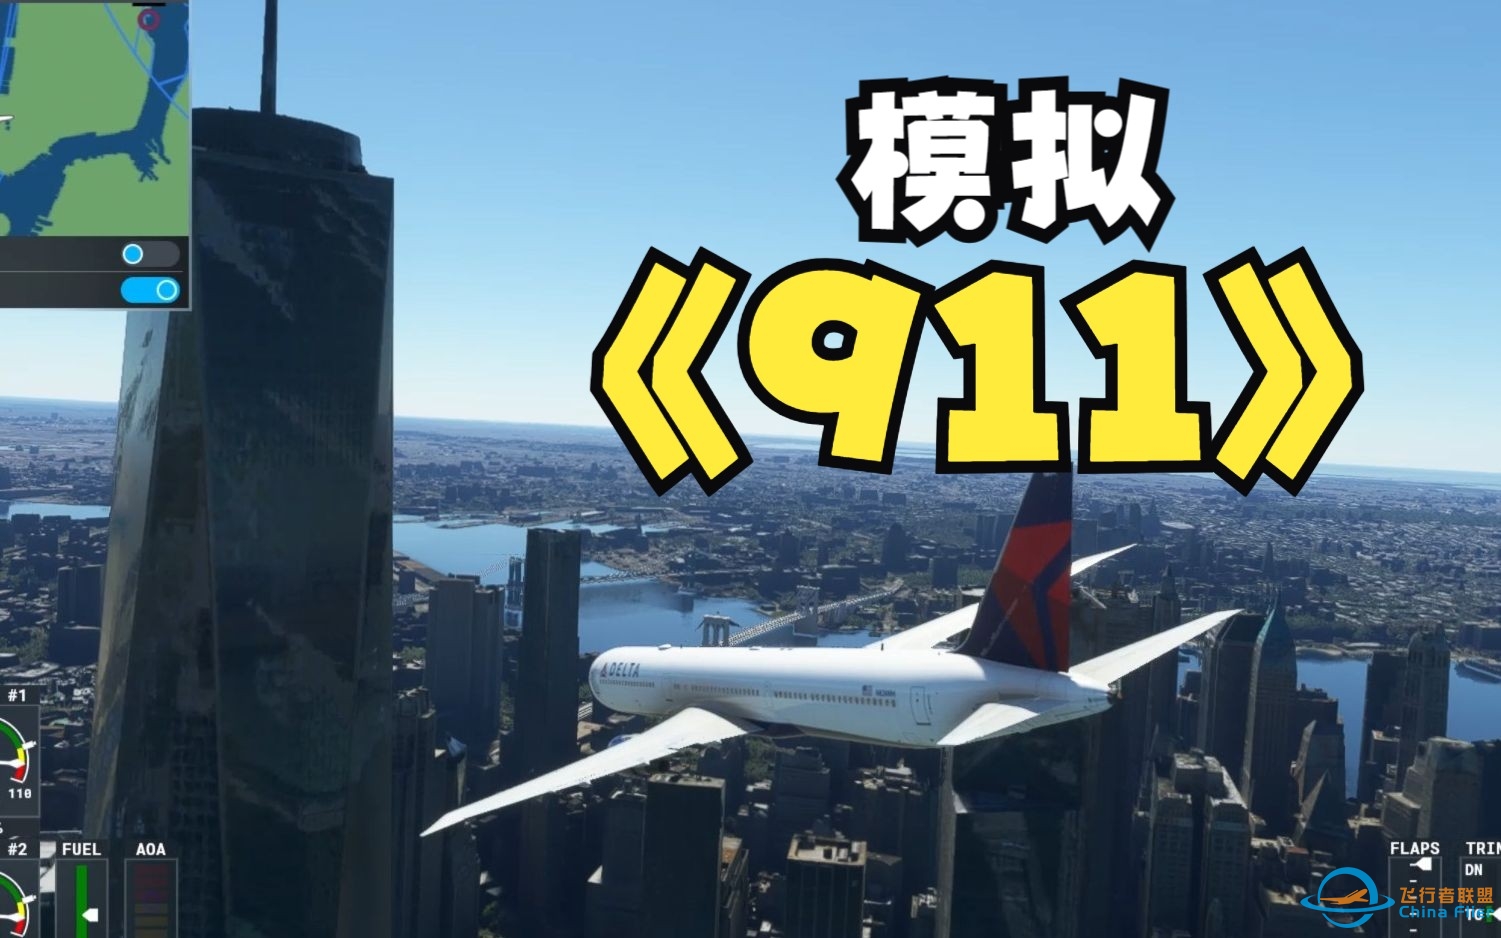 模拟911撞击世贸大厦事件  微软飞行模拟2020-9838 